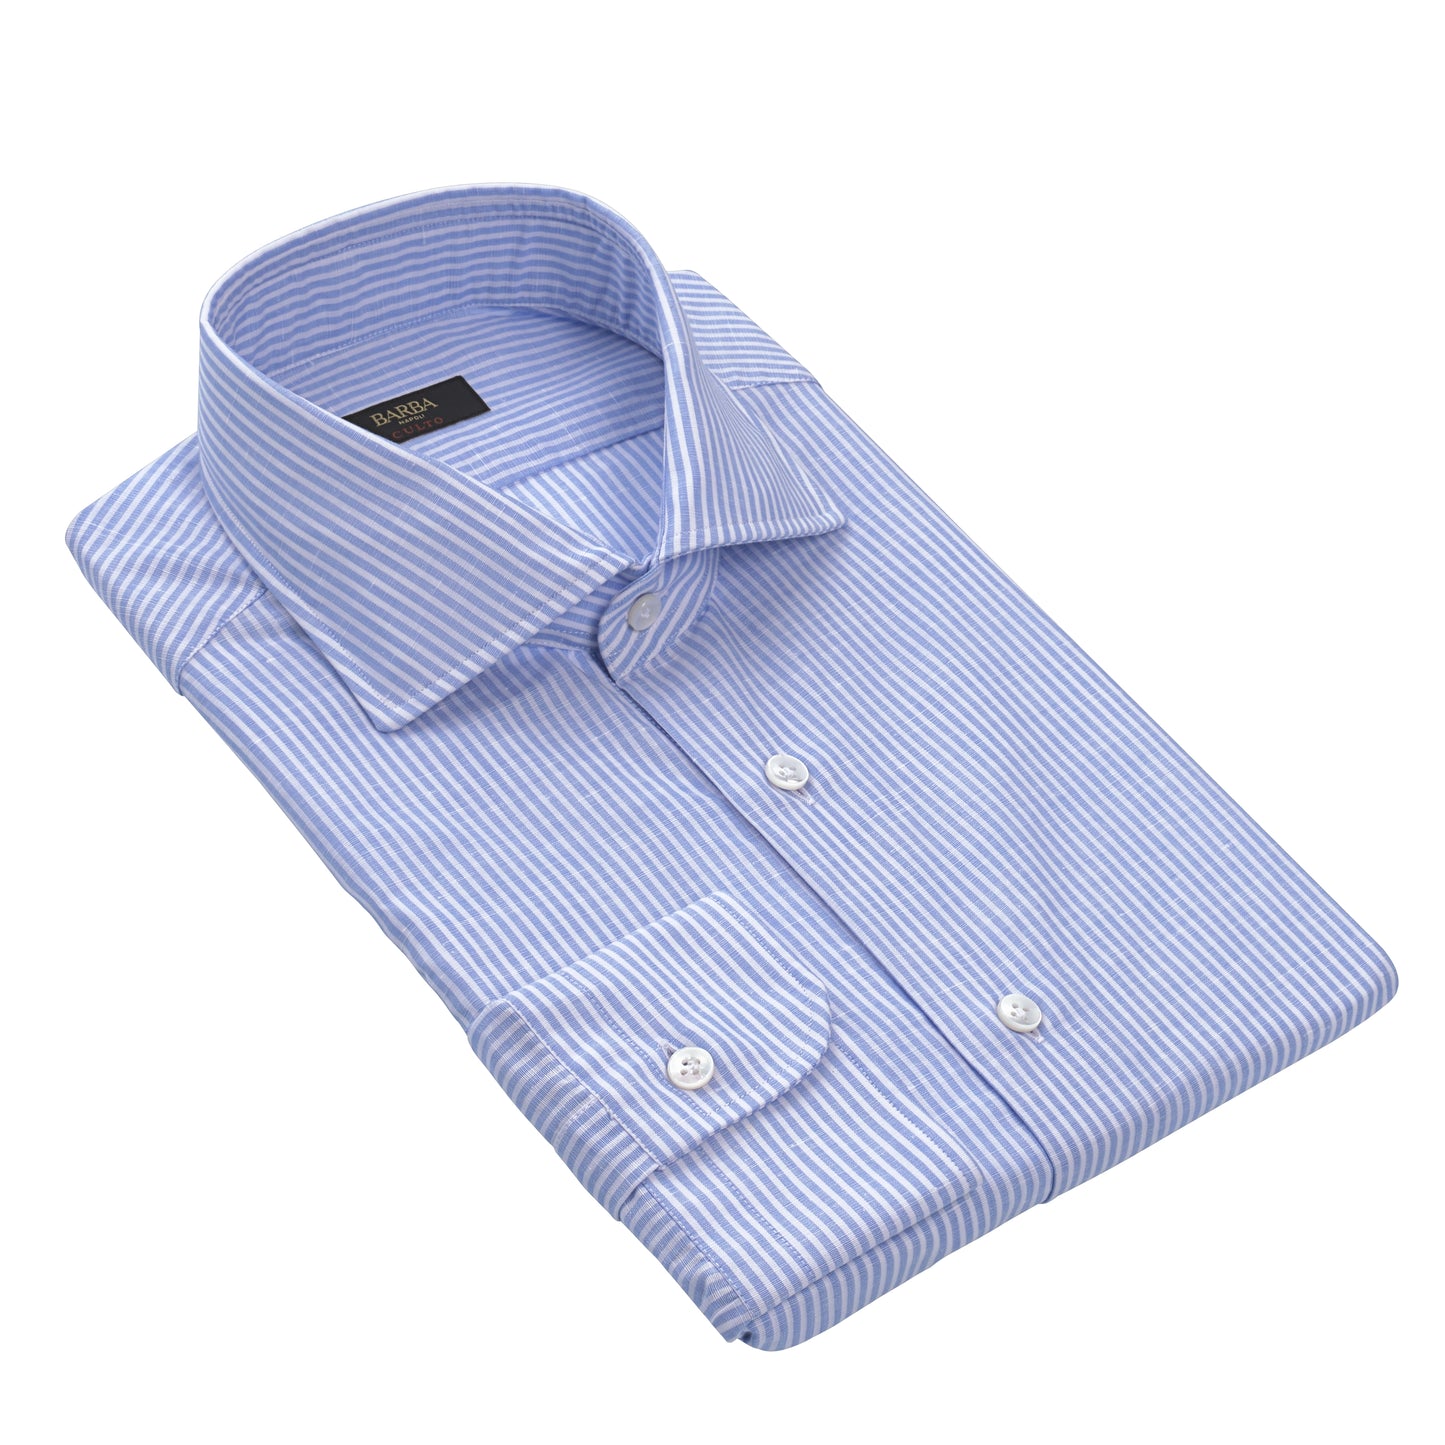 Gestreiftes Hemd aus Leinen-Baumwoll-Mischgewebe in Hellblau und Weiß